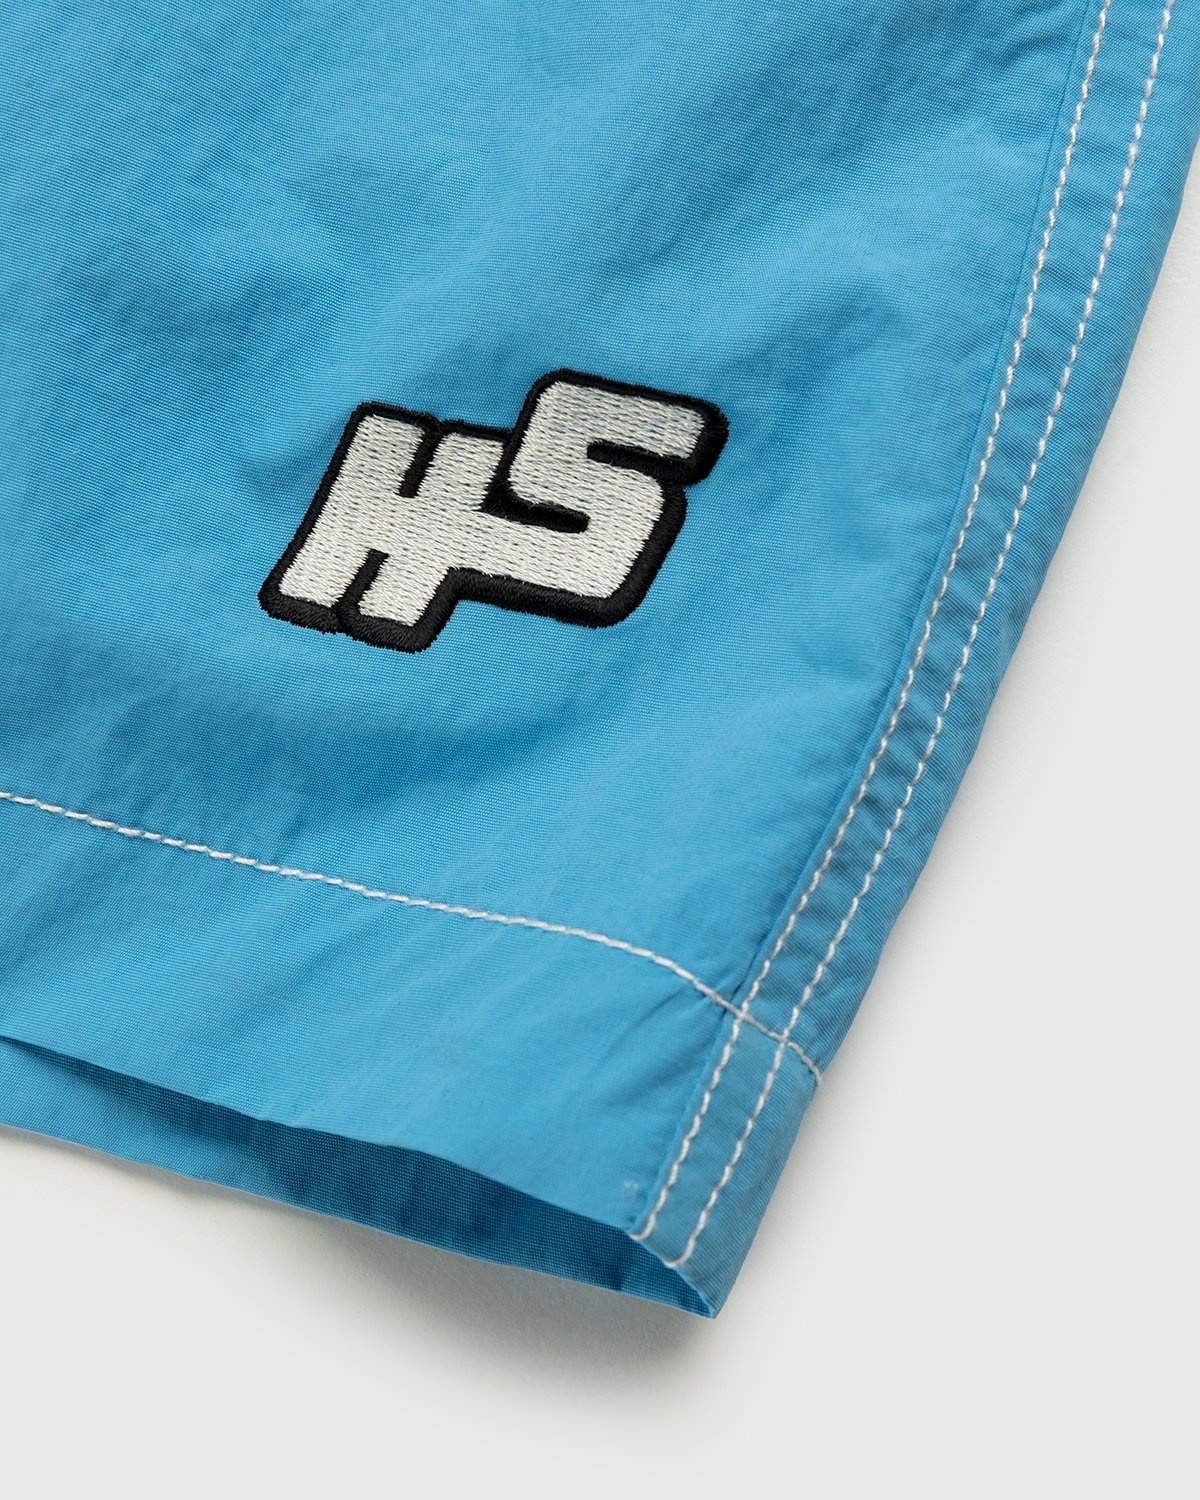 Highsnobiety – Contrast Brushed Nylon Water Shorts Blue - Active Shorts - Blue - Image 4